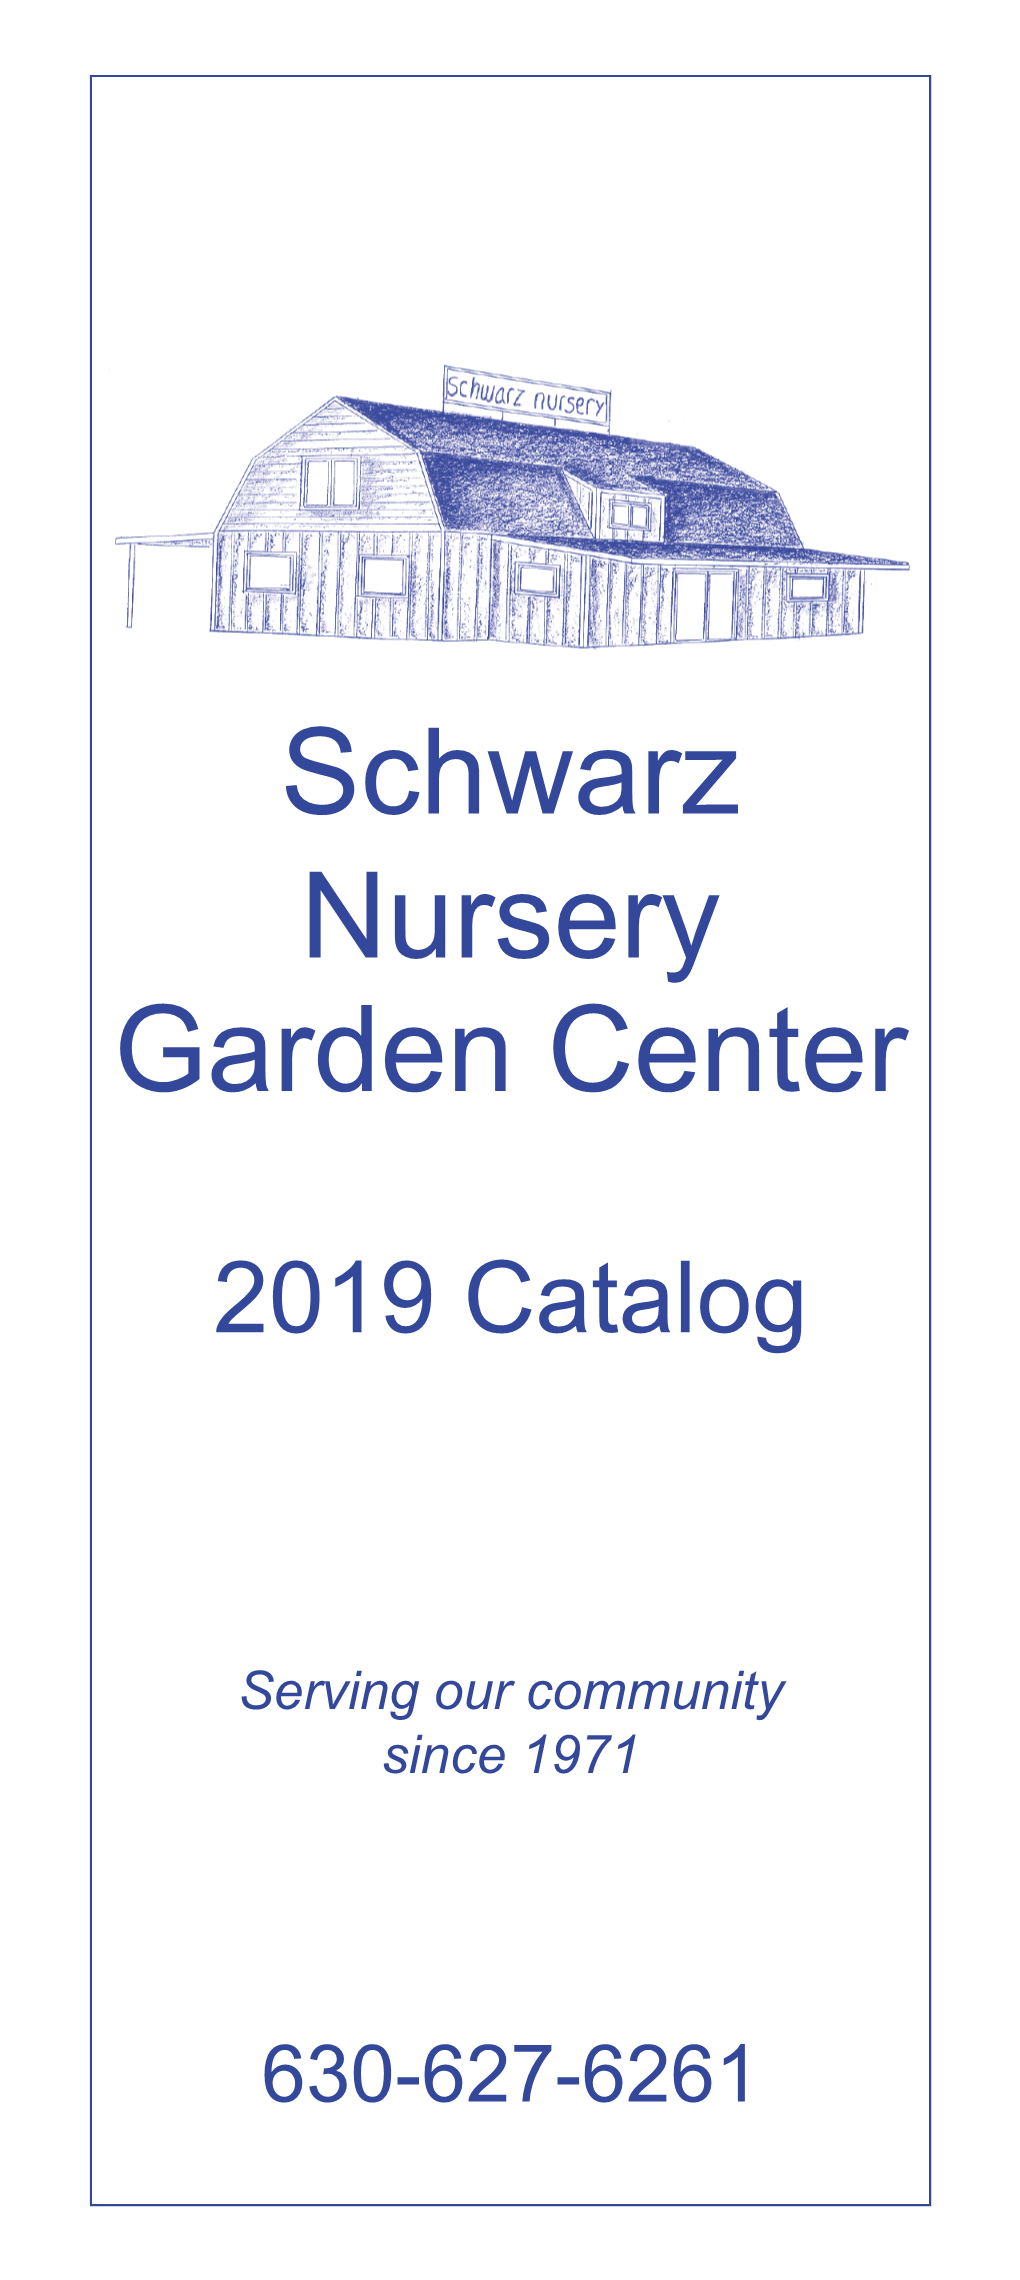 Schwarz Nursery Garden Center